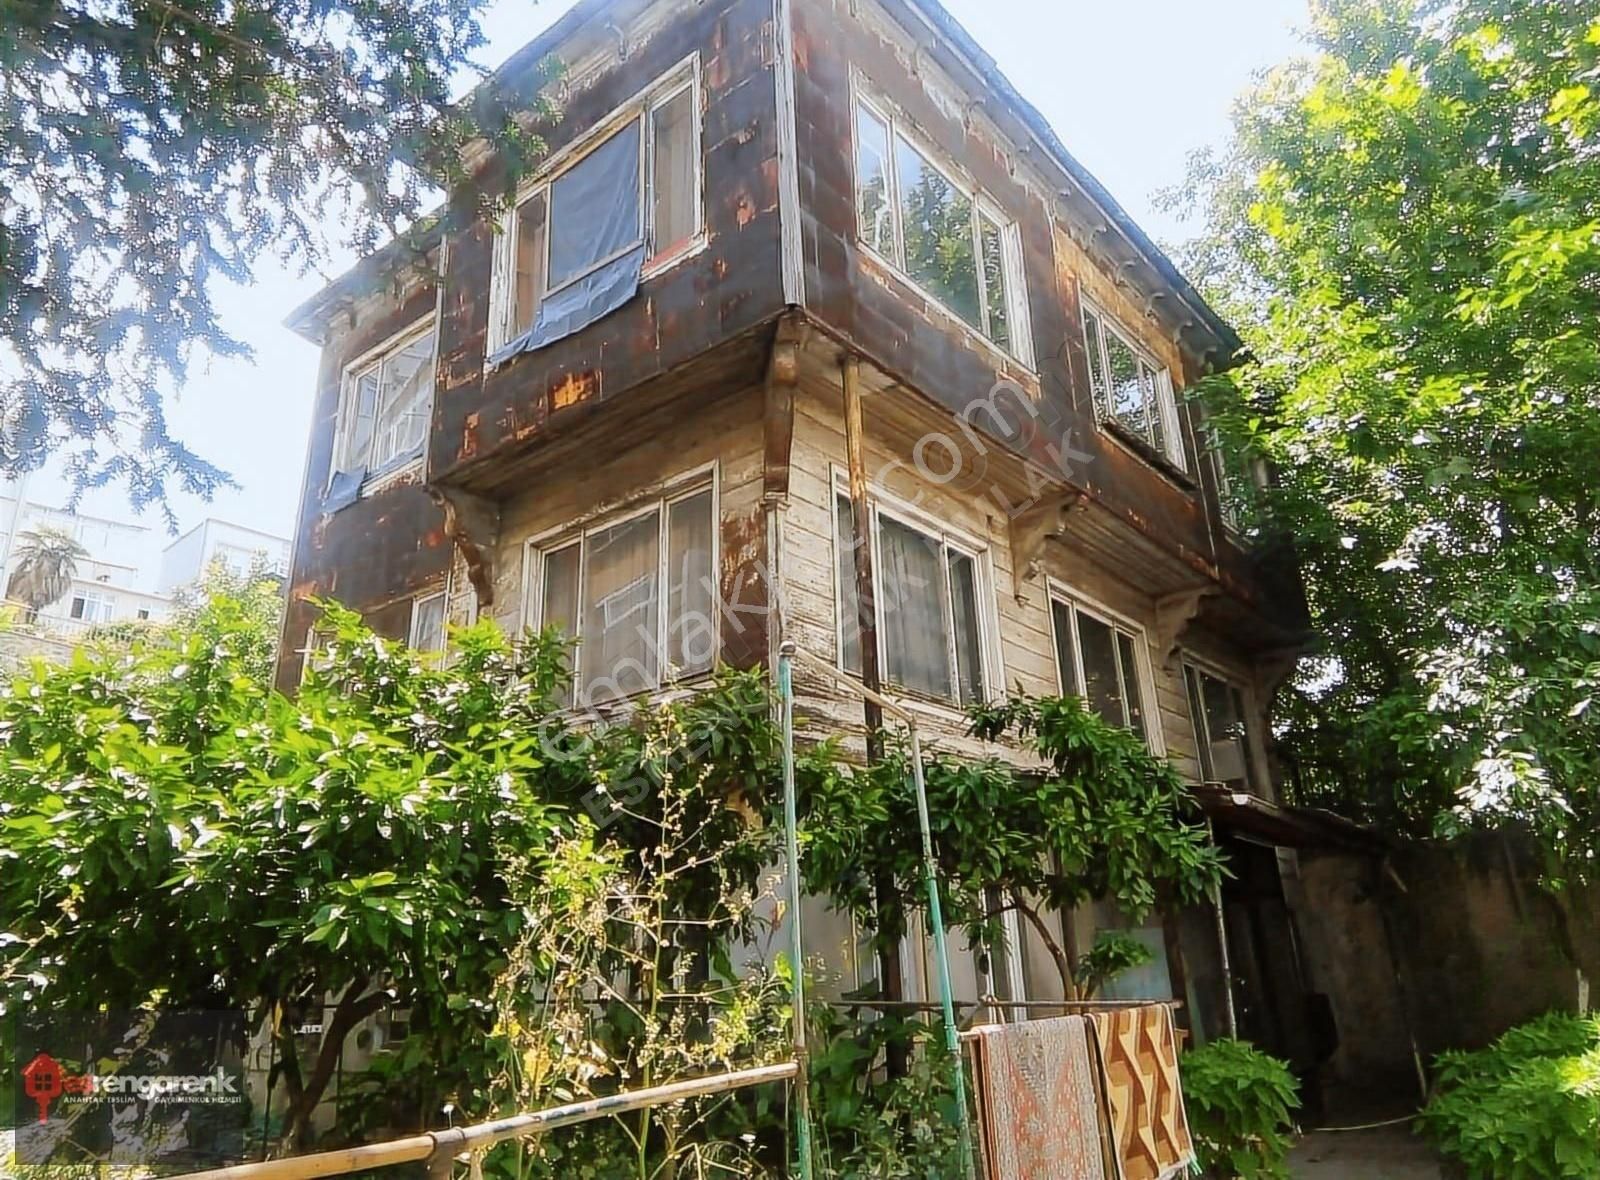 Beyoğlu Küçük Piyale Kiralık Bina 2421 Rengarenk'ten Kasımpaşa'da 3 Katlı Bahçeli Kiralık Bina